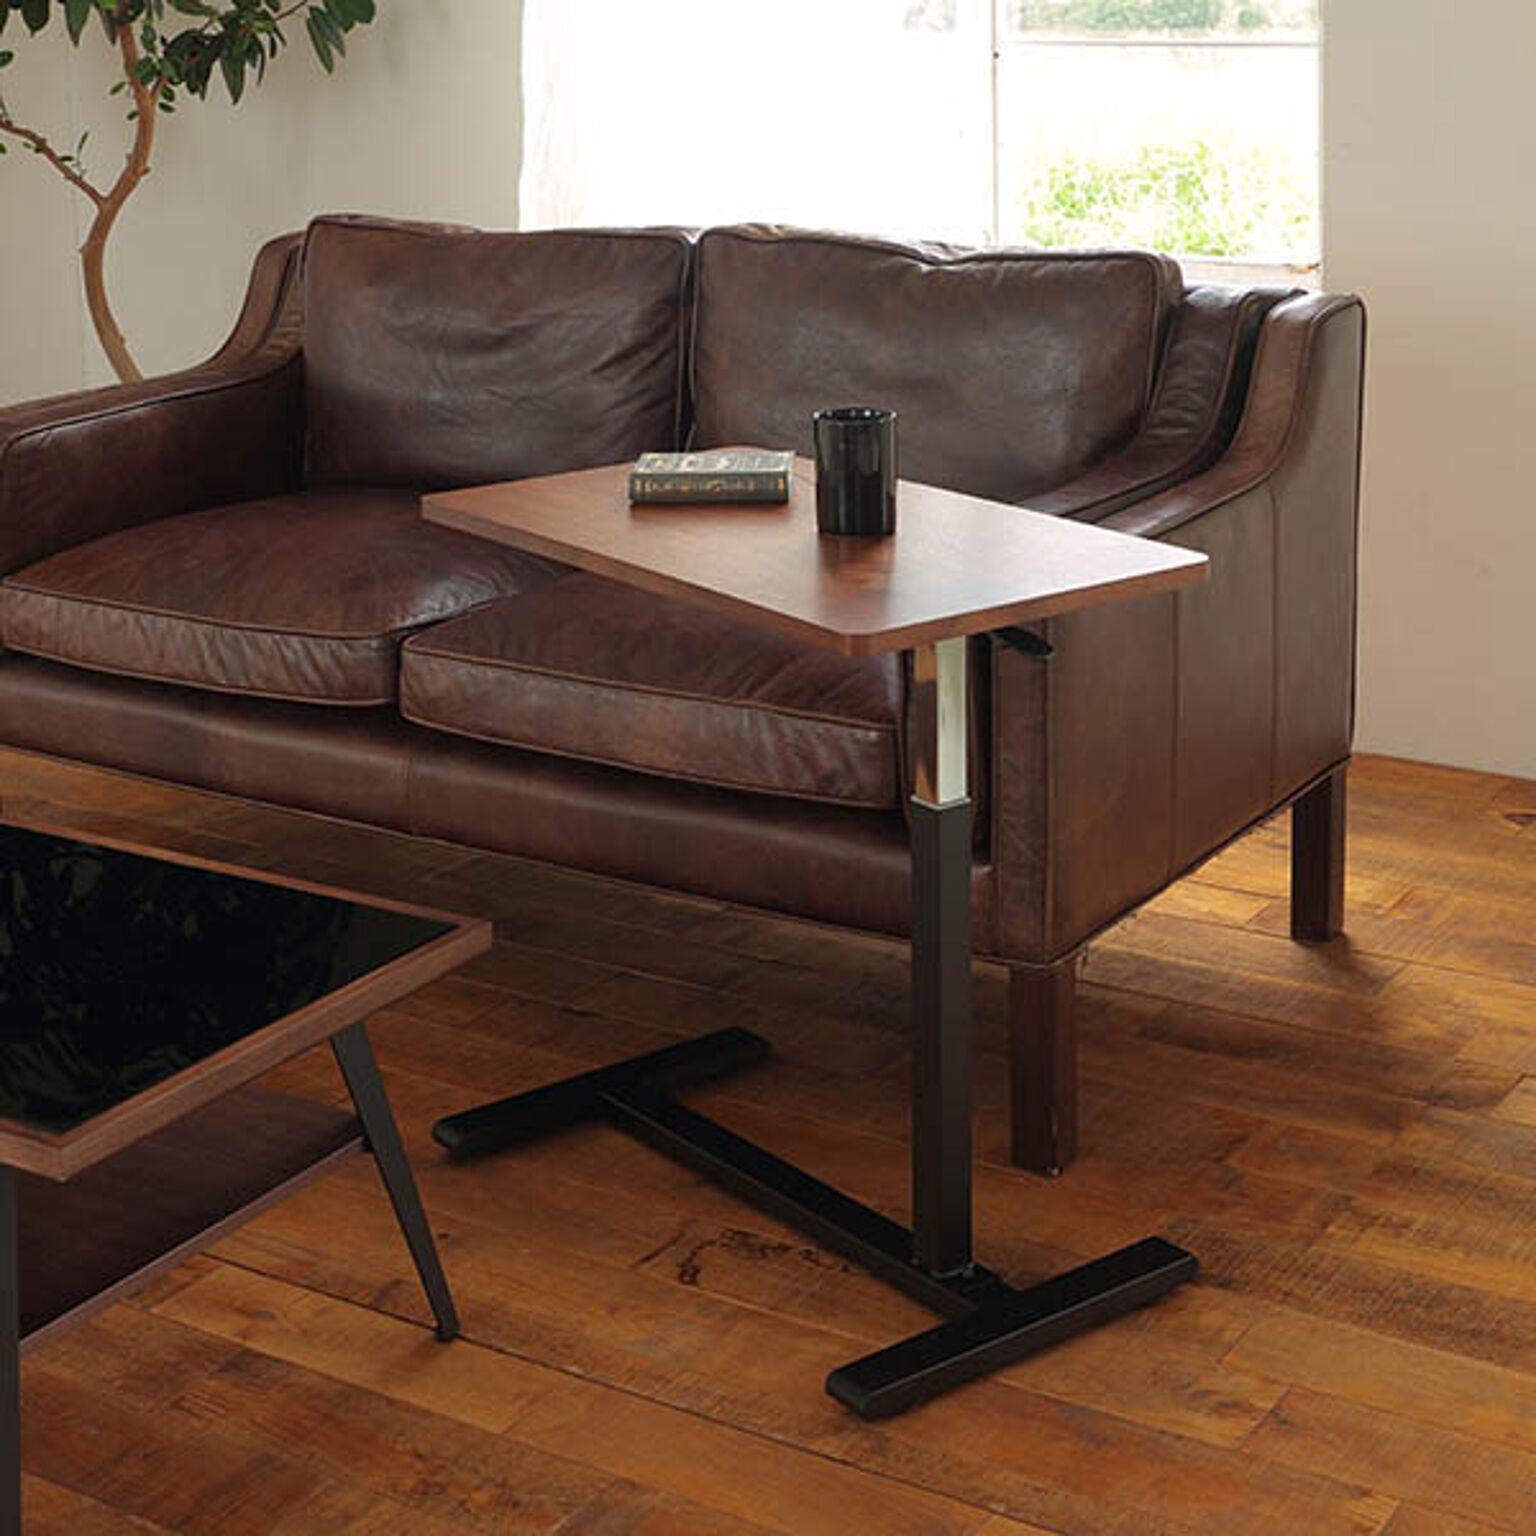 RLT4530 昇降テーブル ブラウン色 幅70 高さ55-75 長方形テーブル 天然木 ウォールナット 無段階高さ調節 スチール 高さ可変テーブル ロメオ